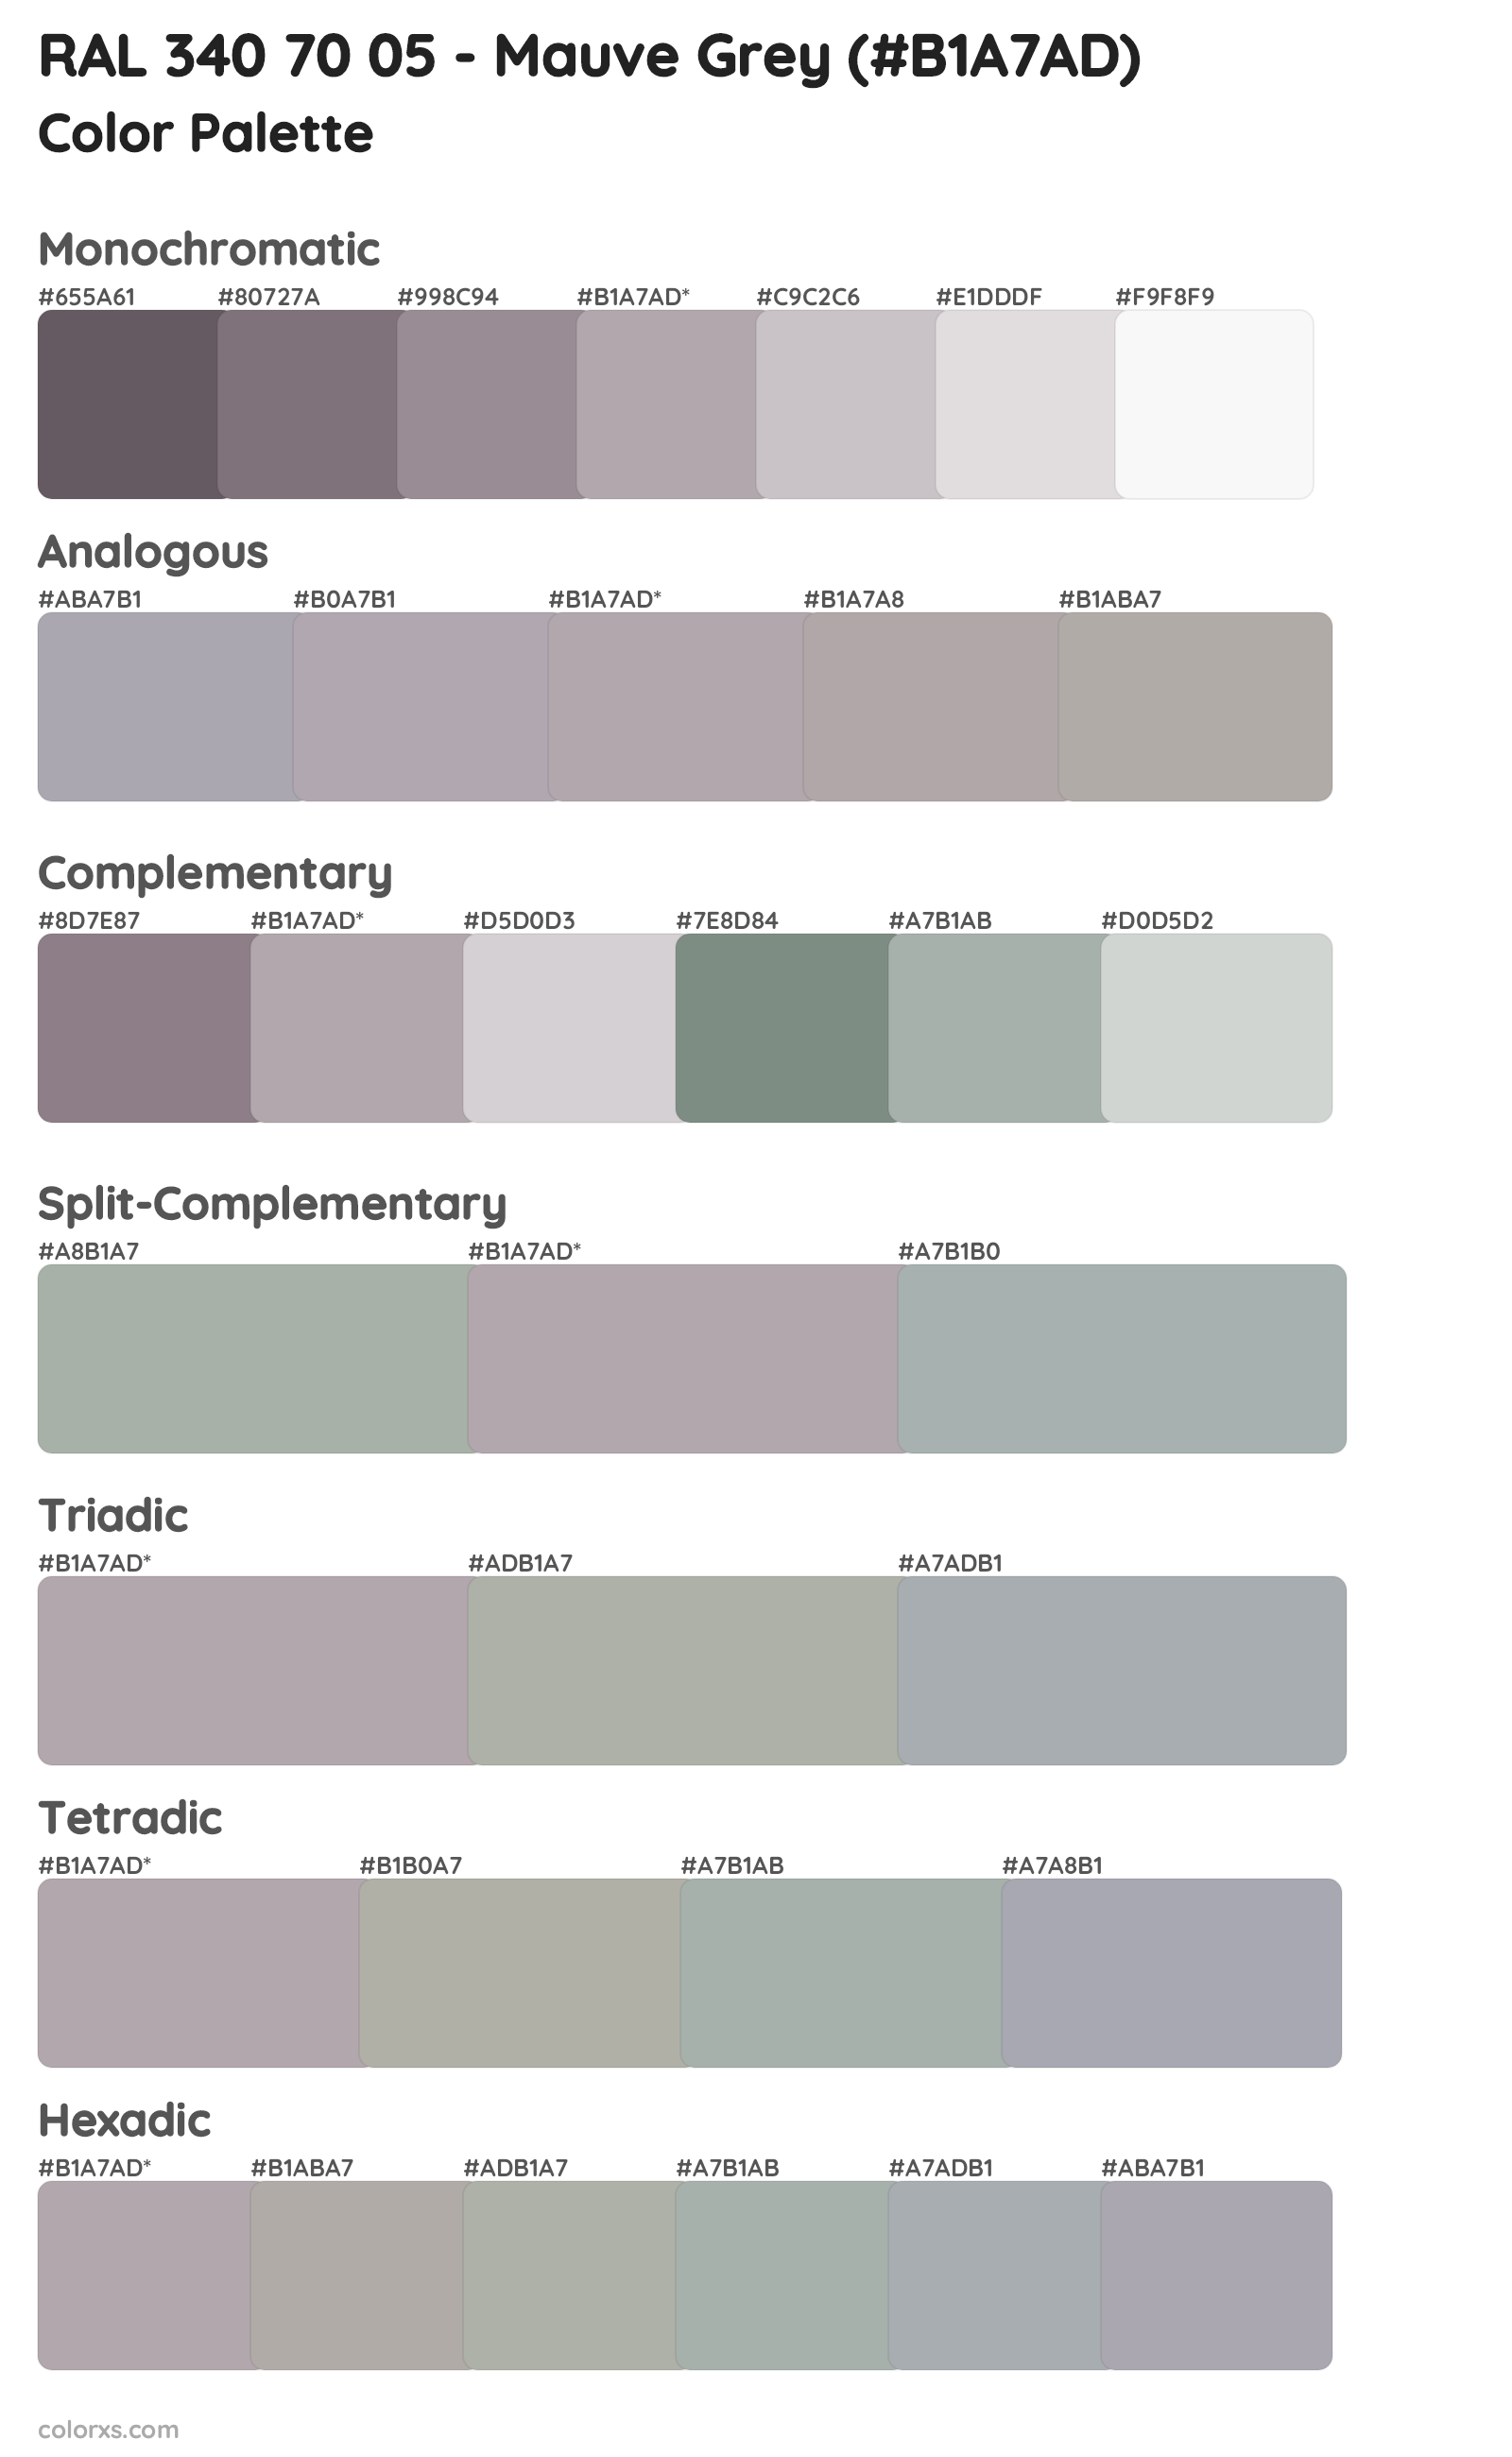 RAL 340 70 05 - Mauve Grey color palettes and color scheme